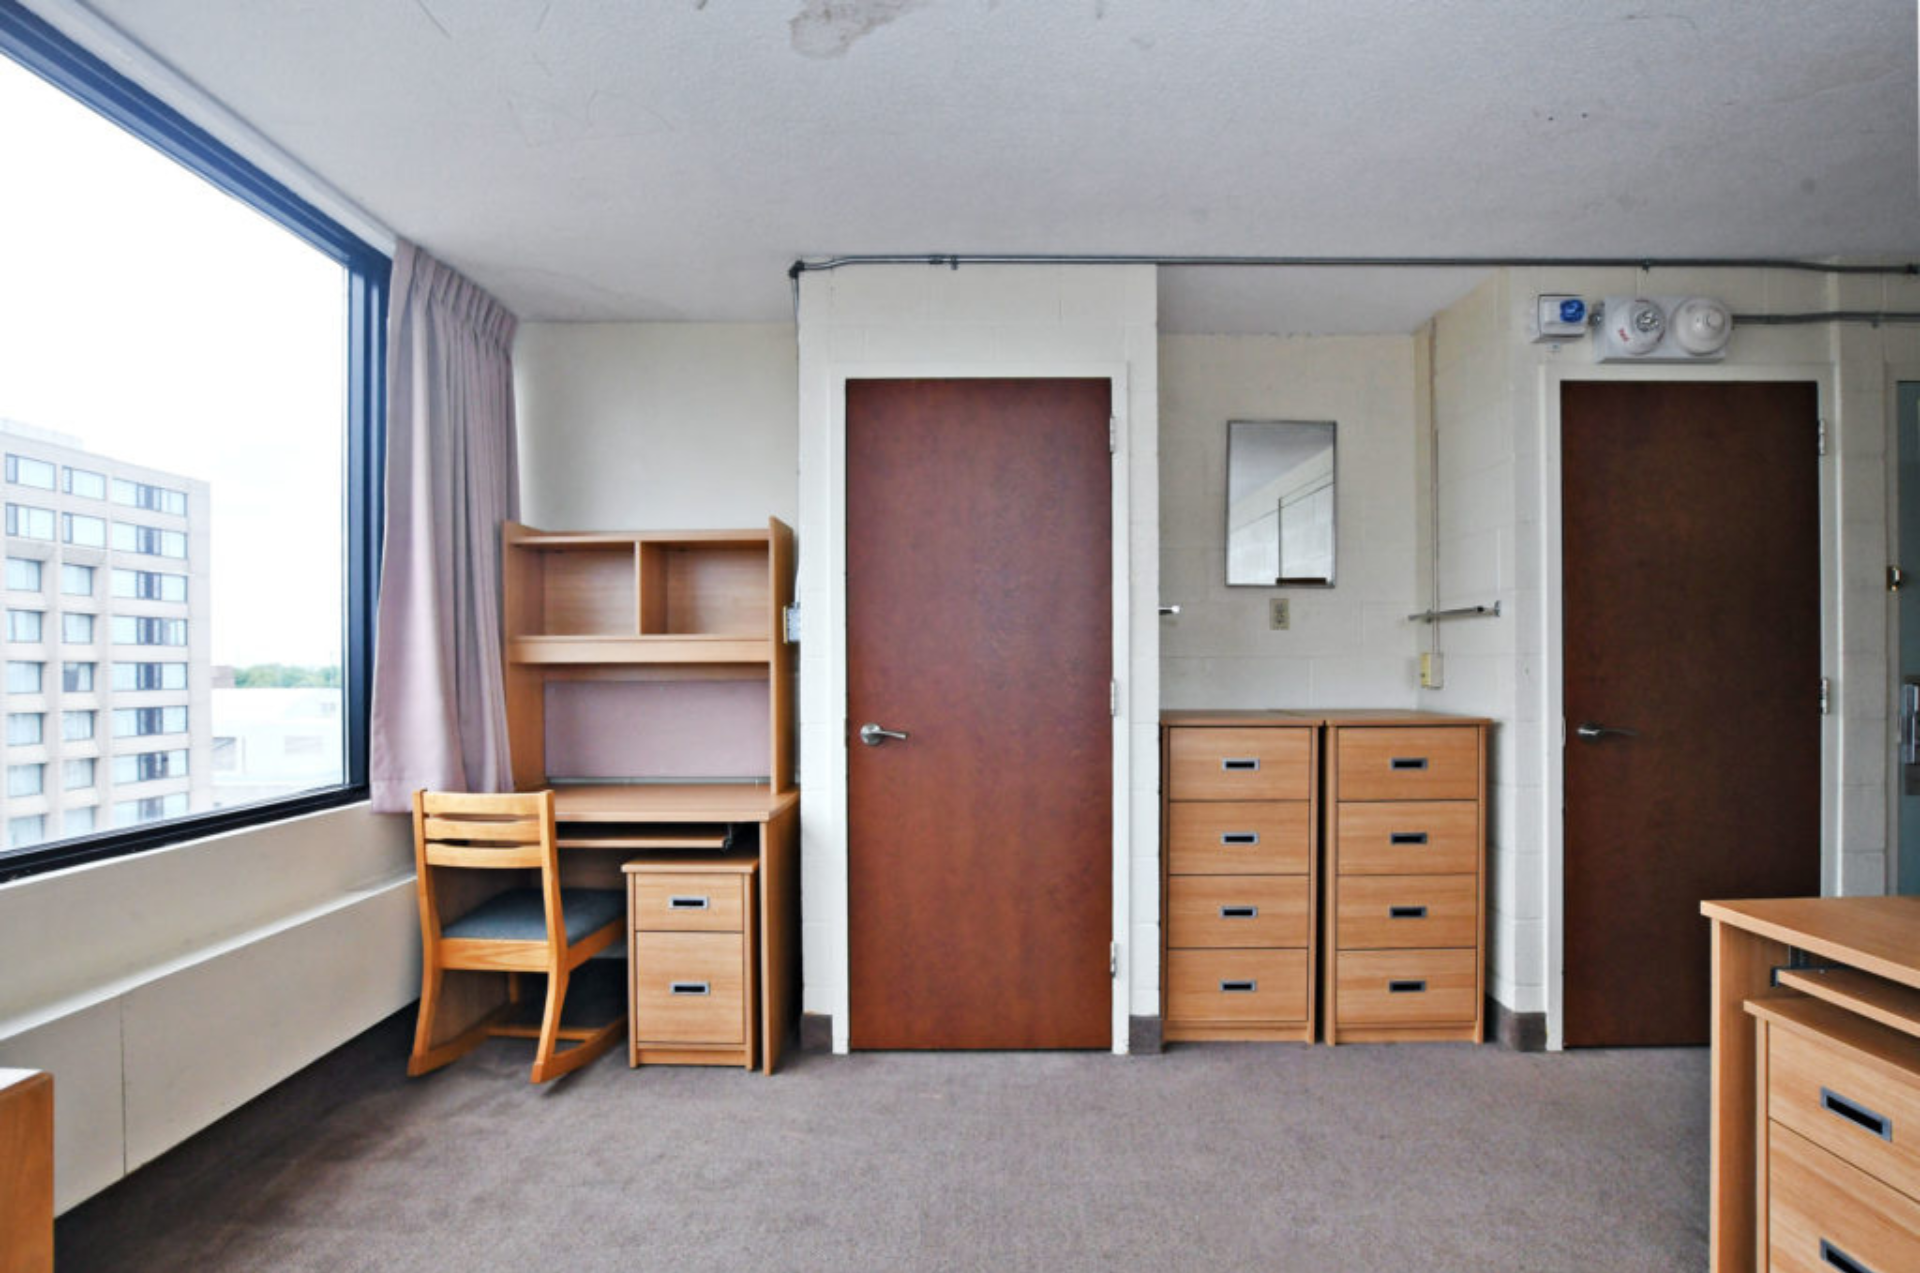 Photo d'une chambre double dans la résidence Stong. Un bureau et une armoire sont visible sur la photo